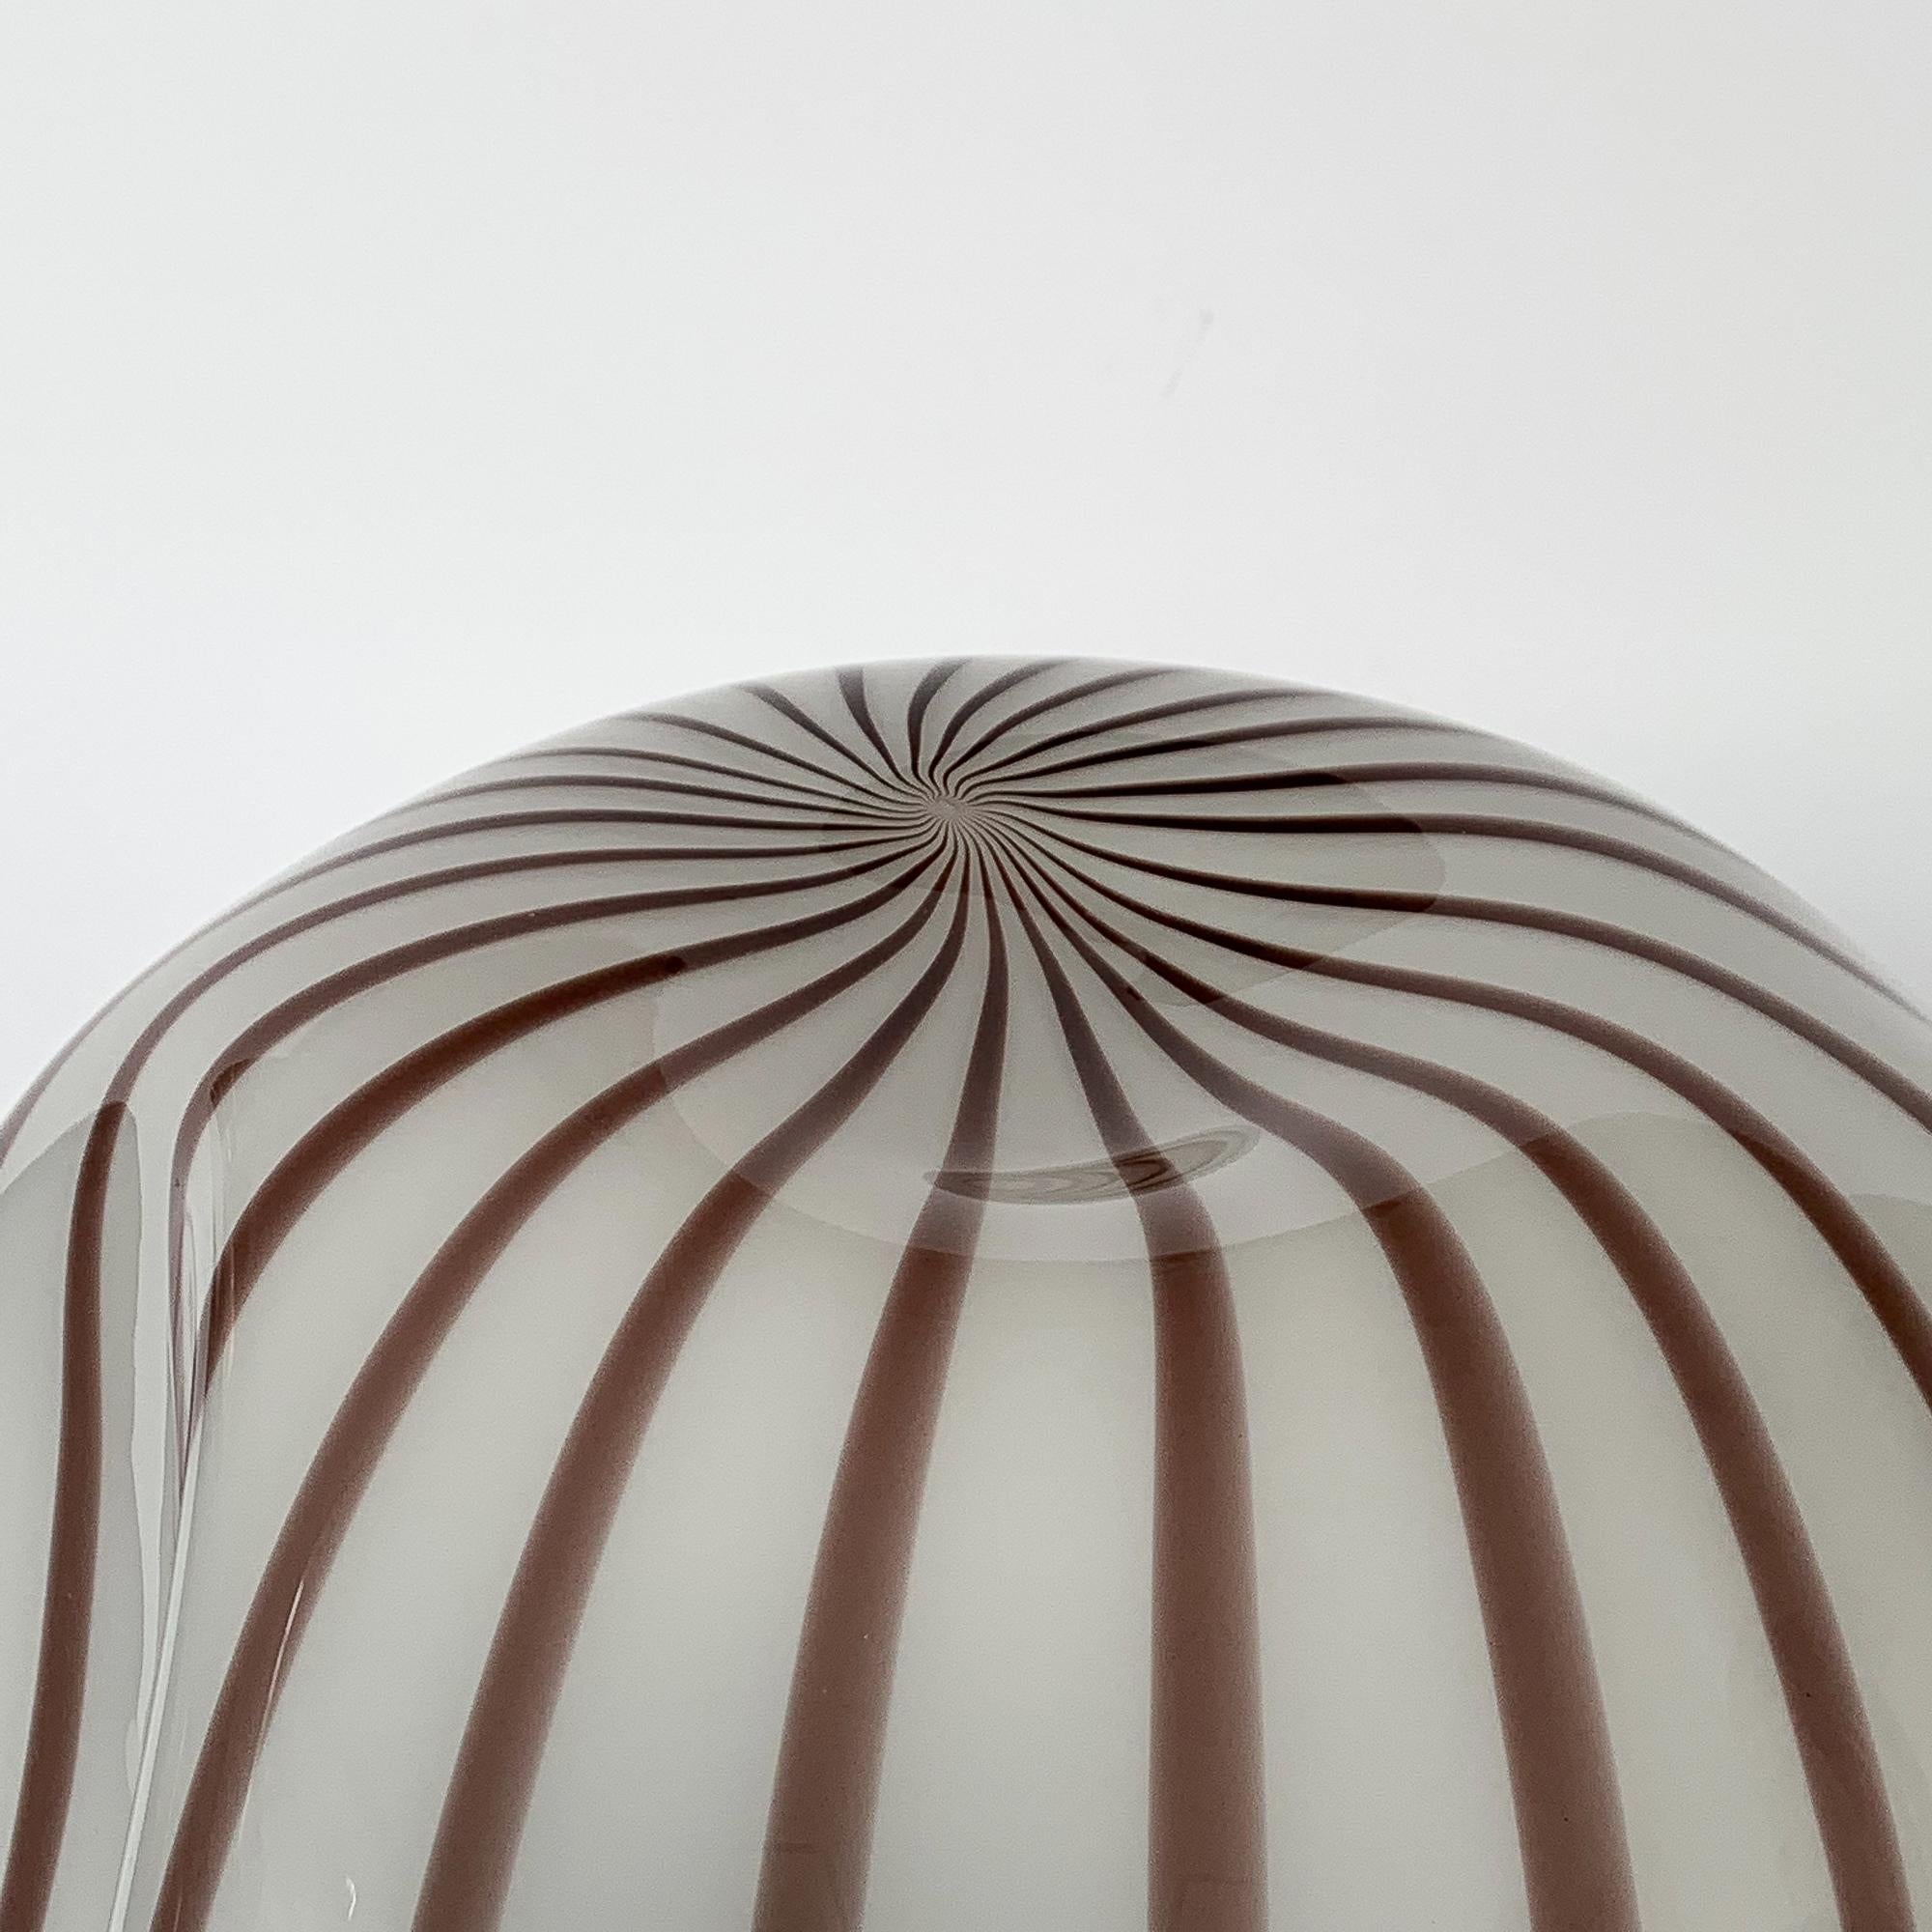 Lino Tagliapietra Murano Glass Striped Balloon Table Lamp for Effetre 1